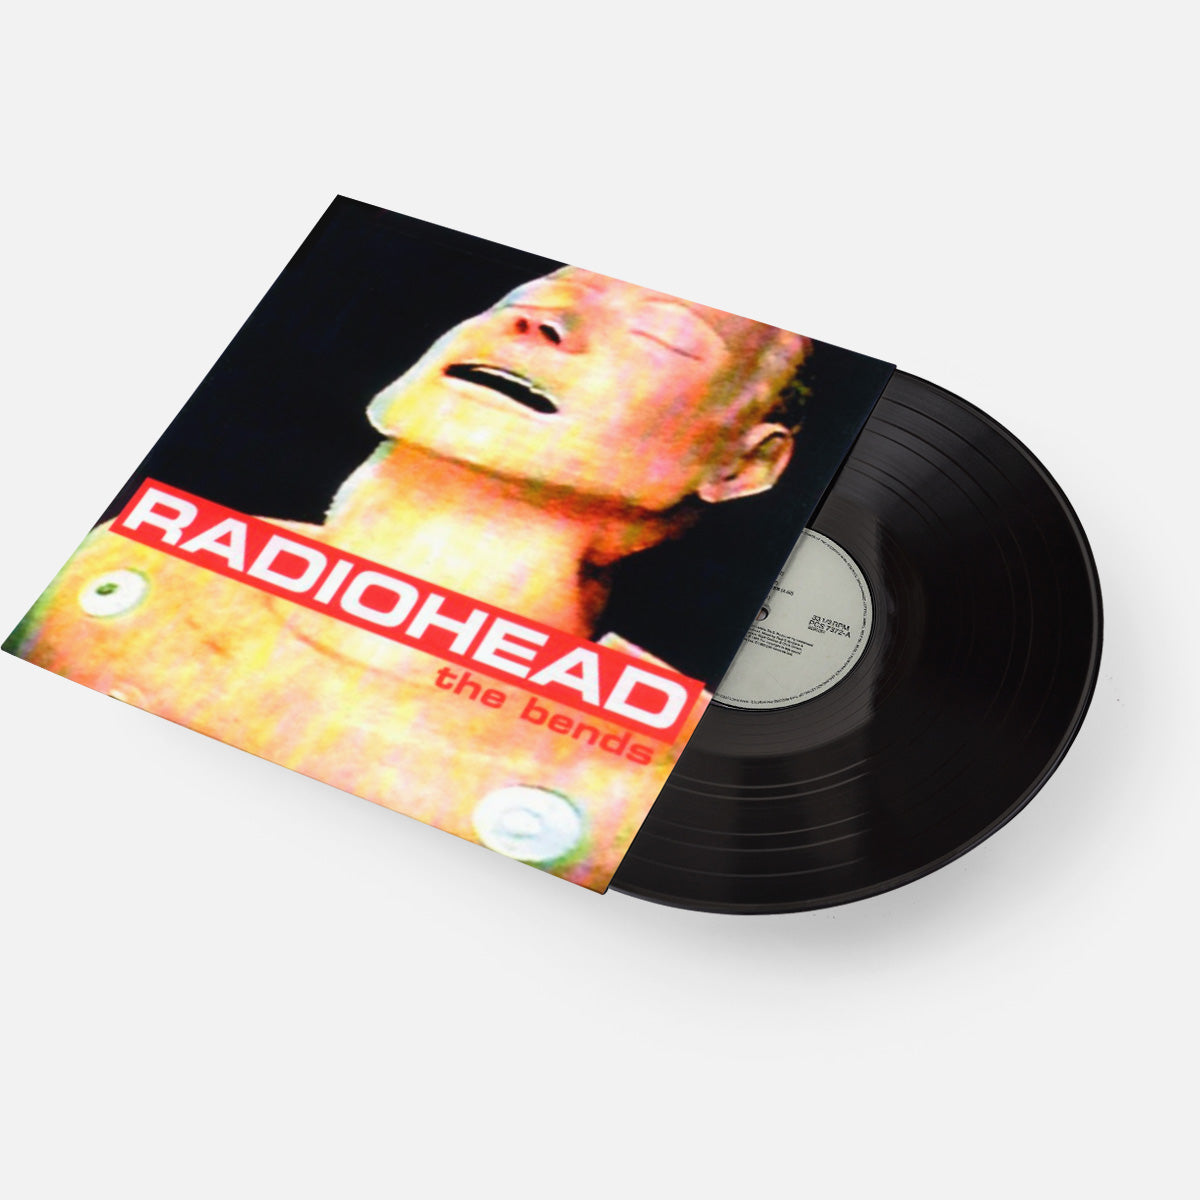 http://vvvrecords.com/cdn/shop/collections/Radiohead-The-Bends-Black-Vinyl-LP_1200x_3b3179b0-7177-465e-87ca-c2c15b452b30.jpg?v=1645623950